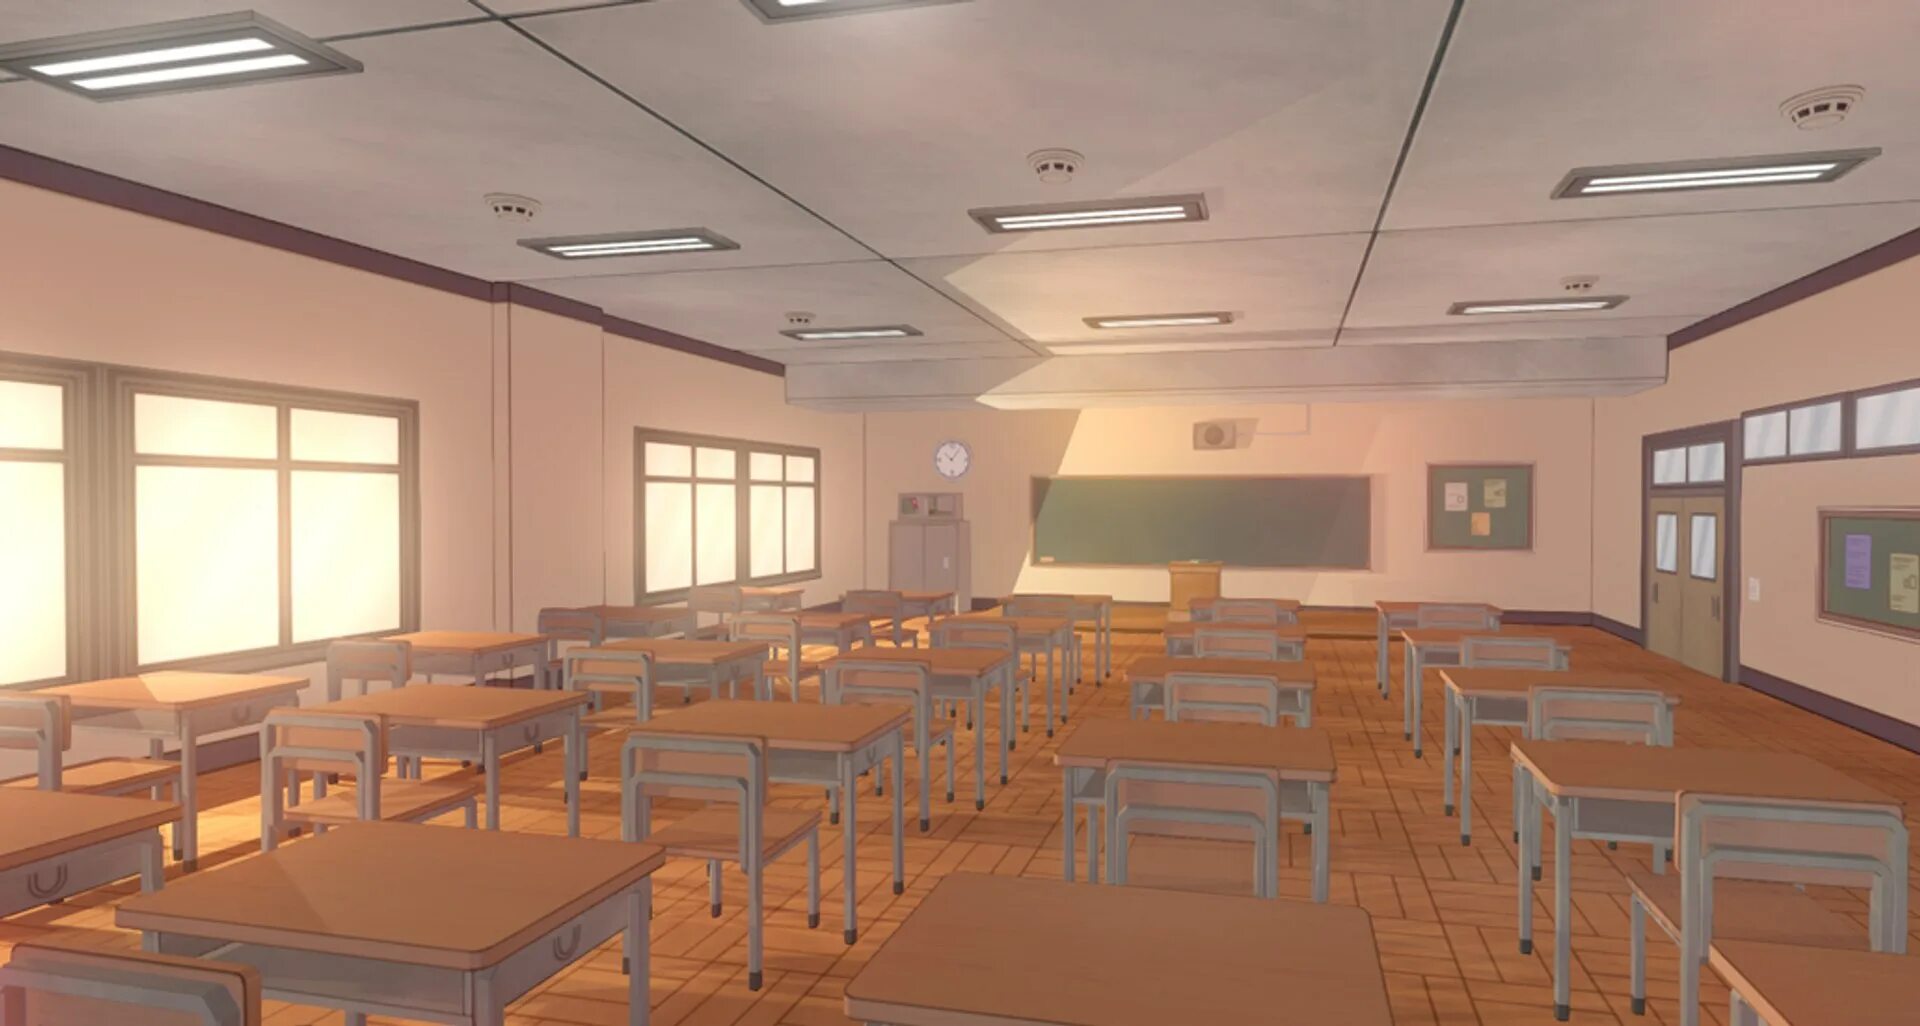 R34 classroom. 3d модель школы. Школа 3д модель внутри для анимация. Старшая школа 3д.